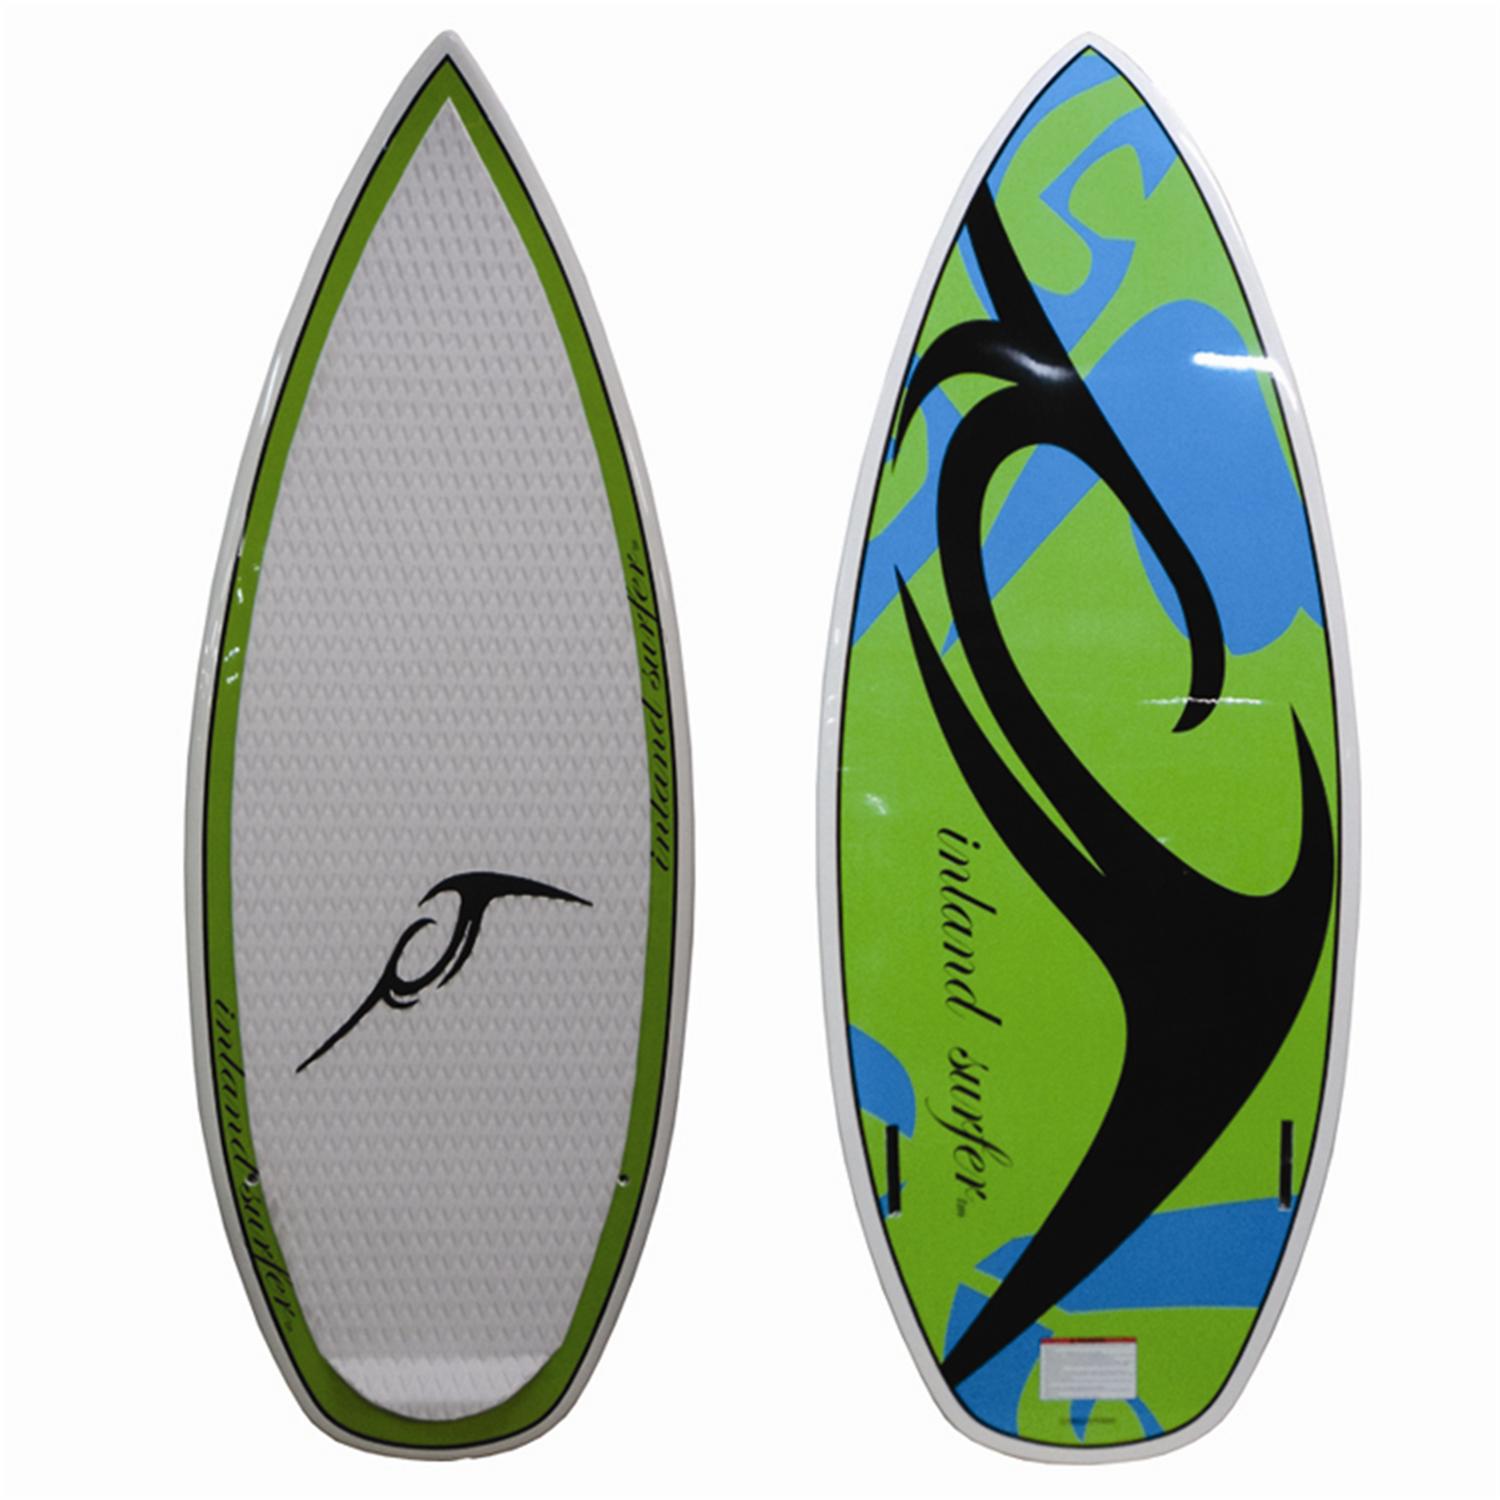 Inland Surfer Mucus Wakesurf Board 2012 | evo outlet